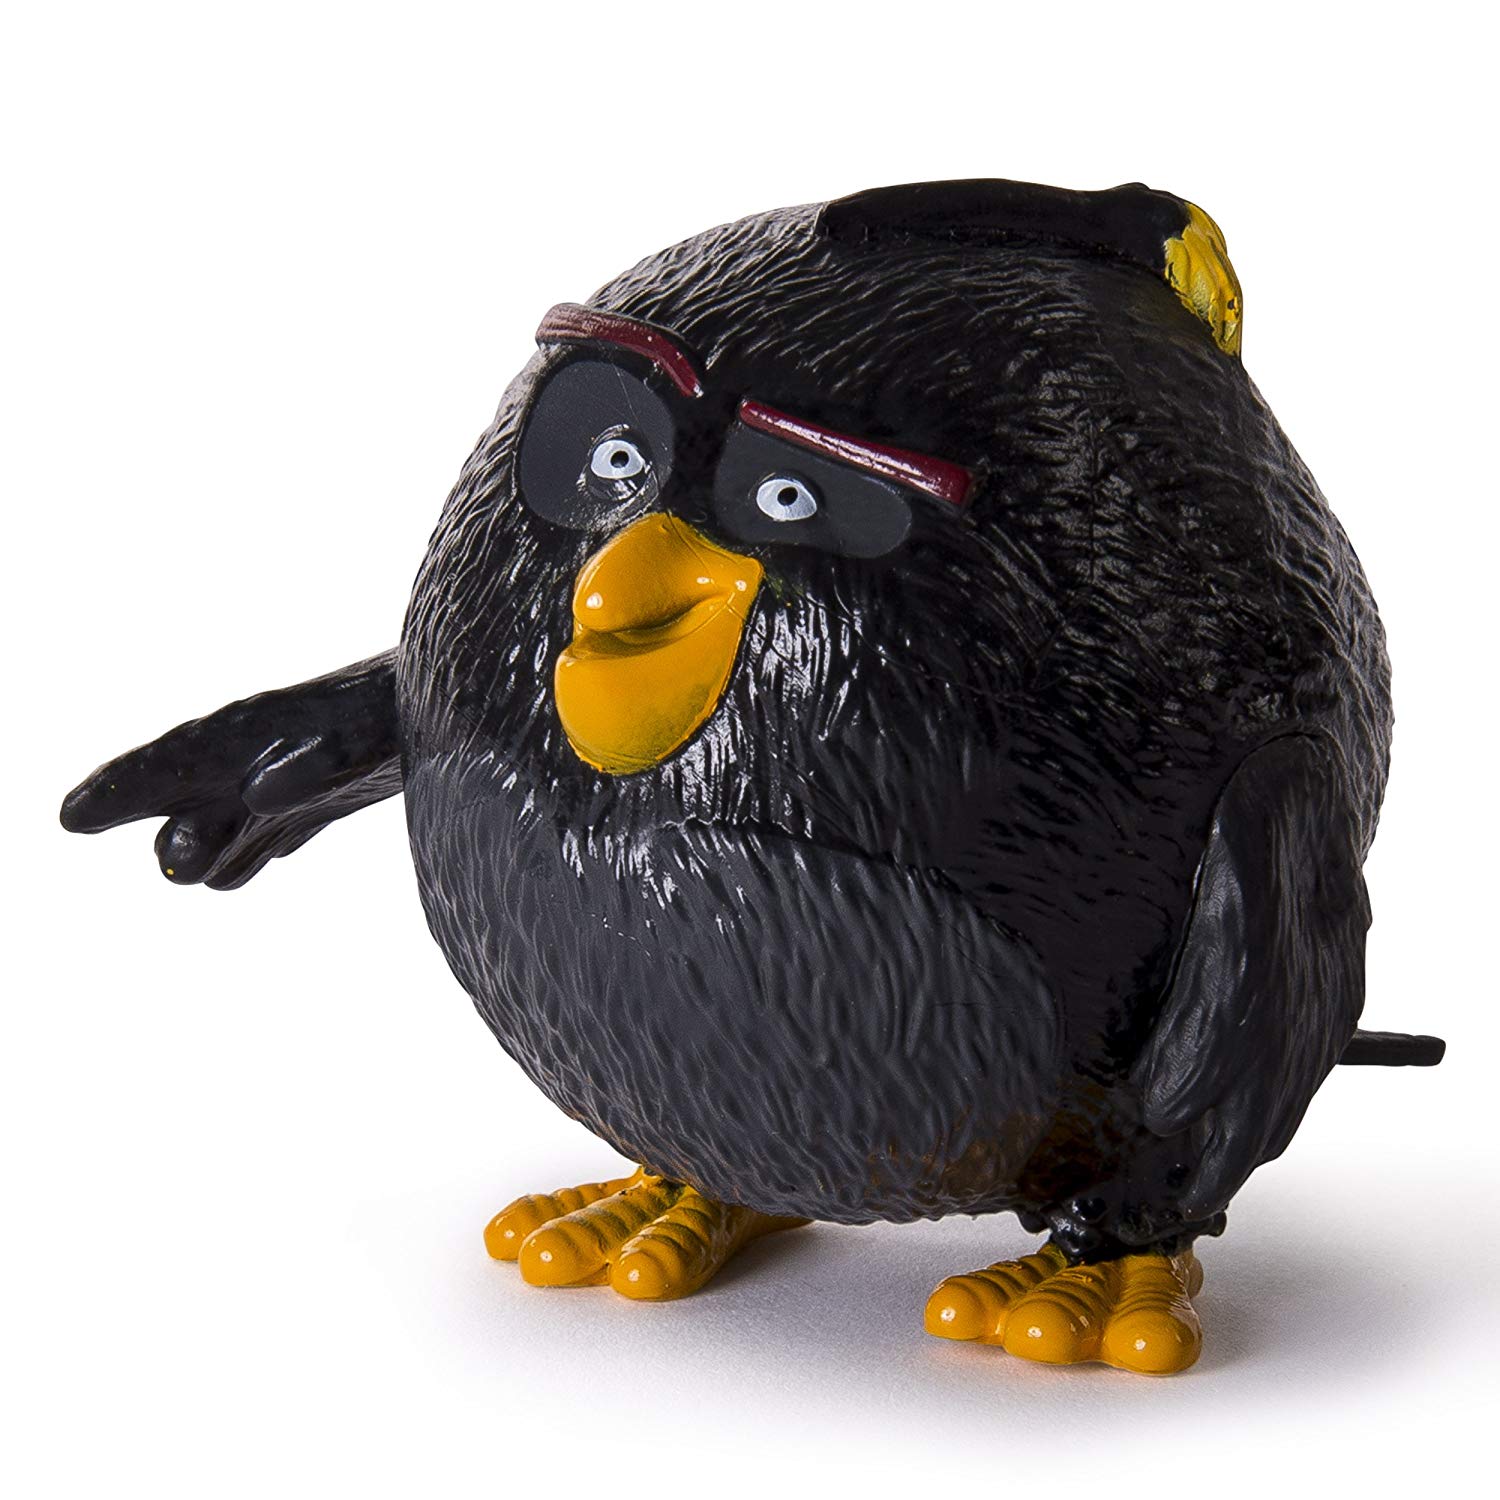 Коллекционная фигурка Angry Birds - Бомб